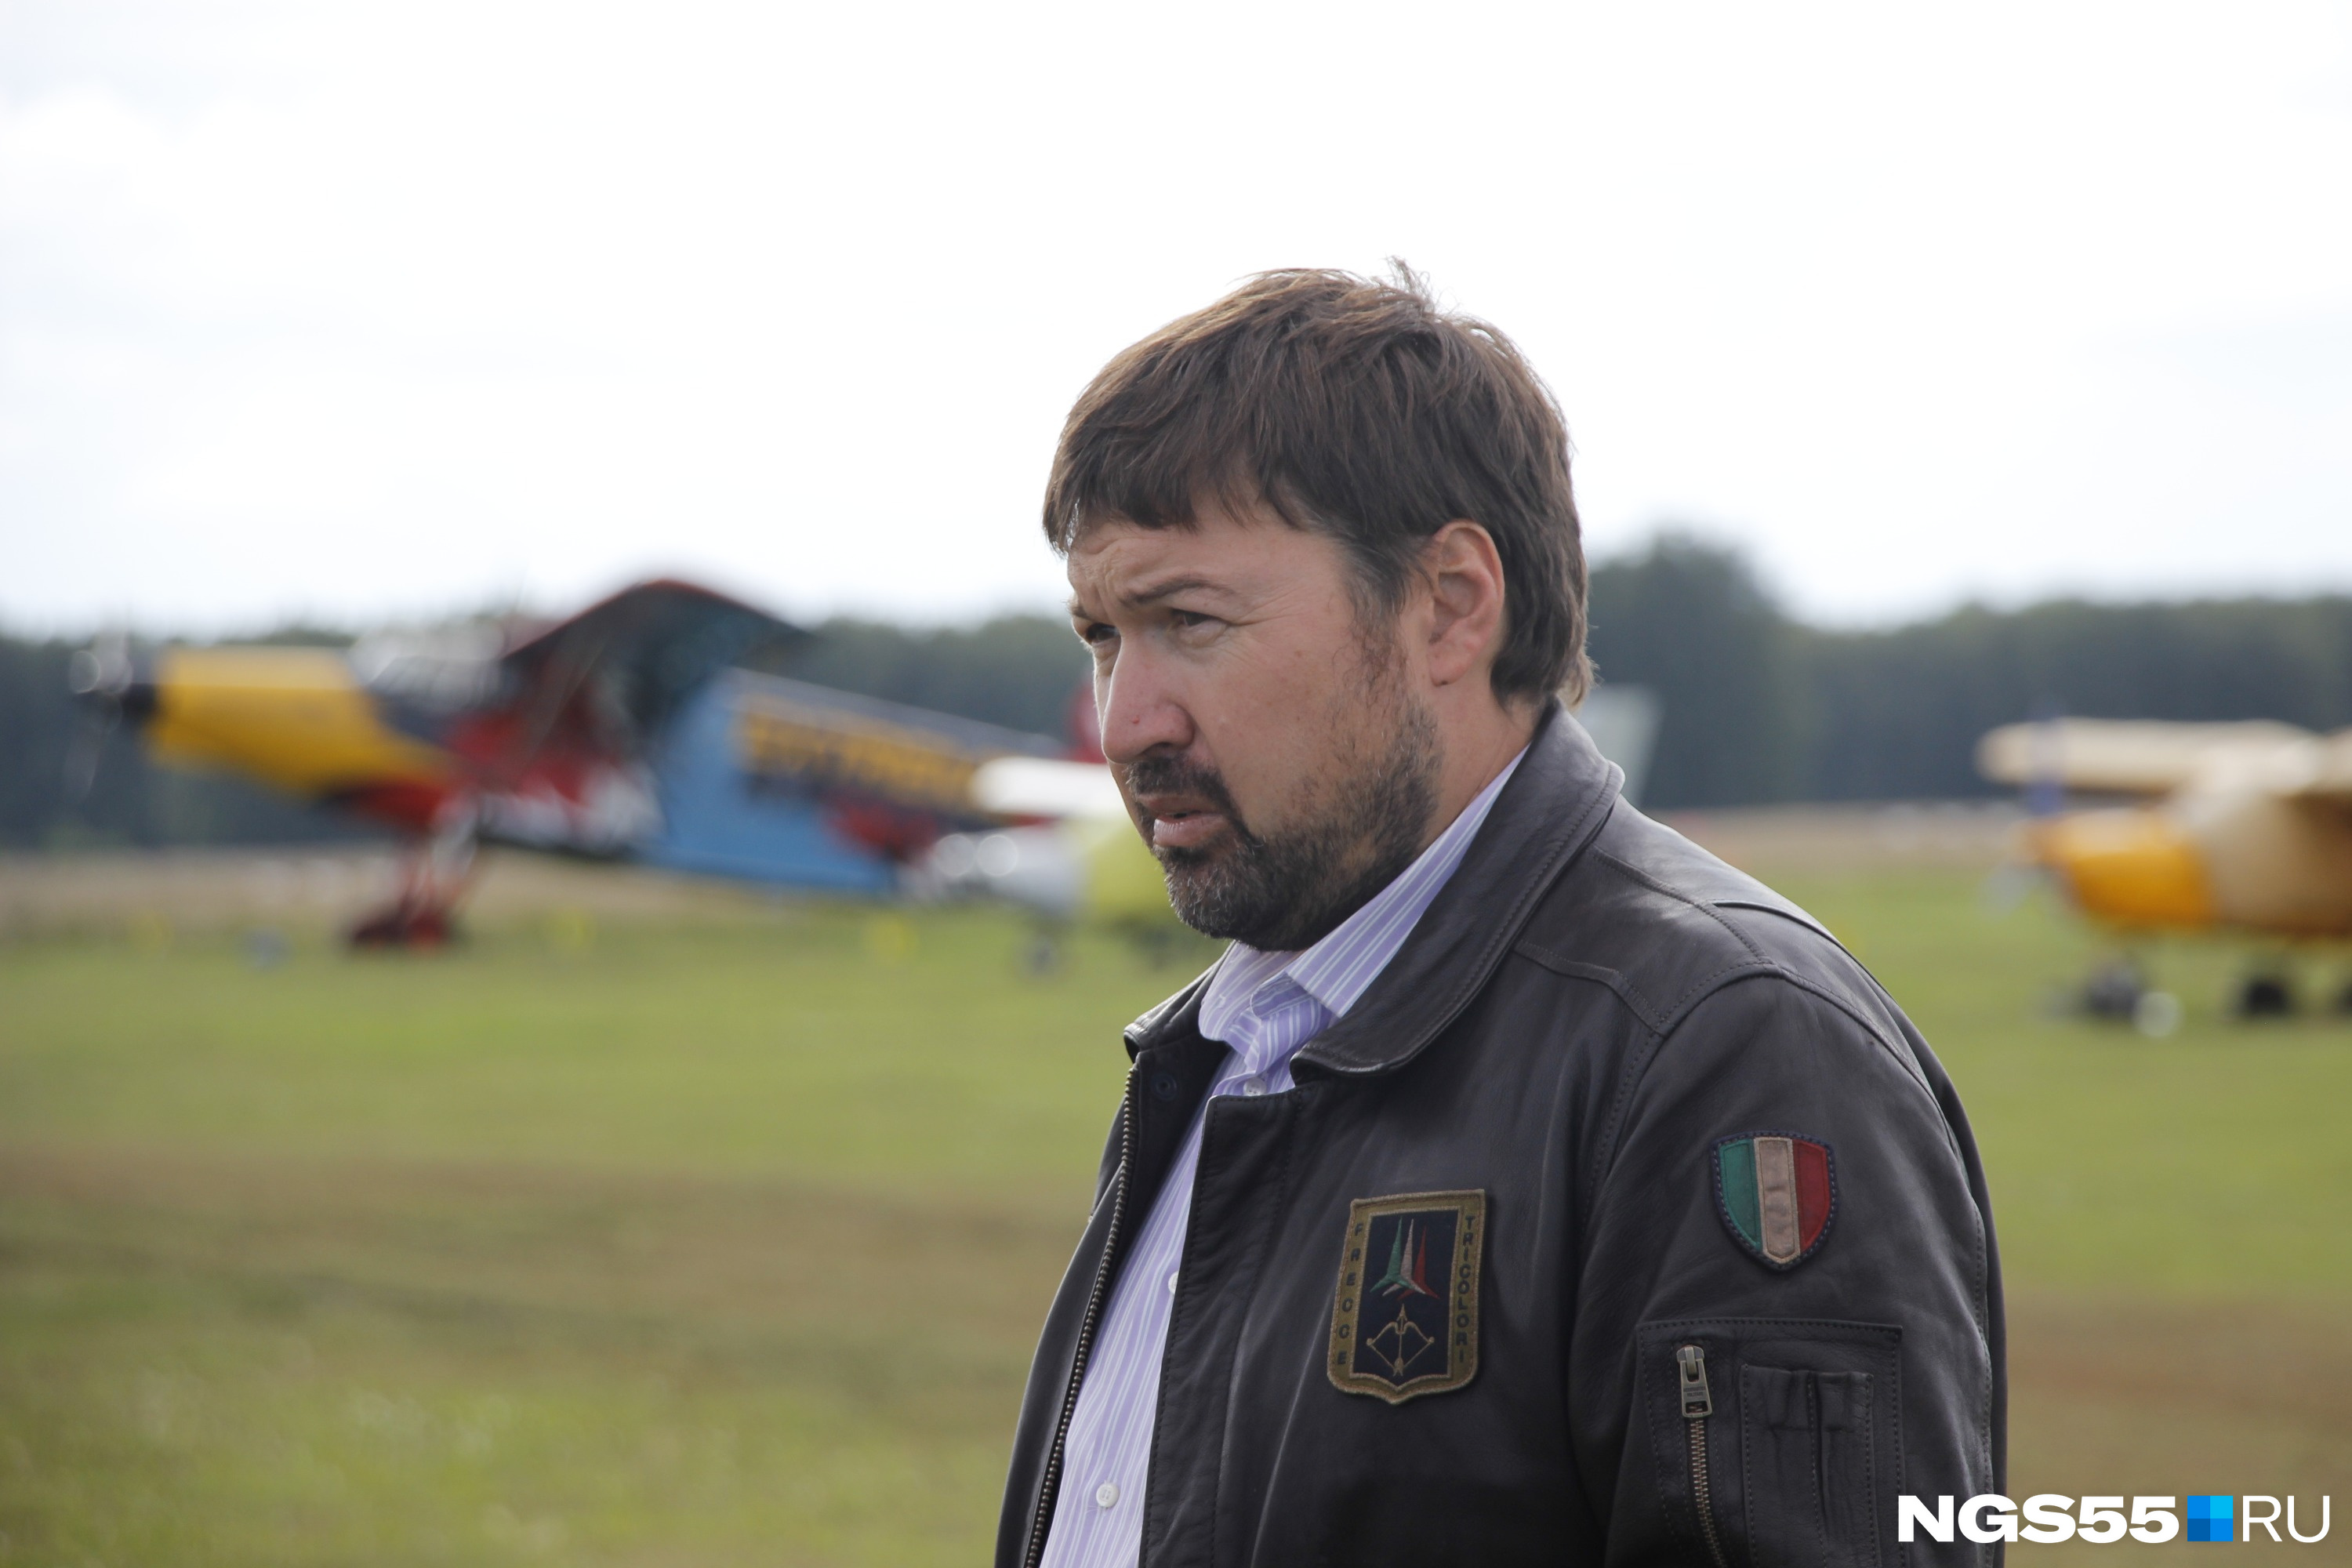 Александр Анисимов недоумевает по поводу странных законов, касающихся частной авиации